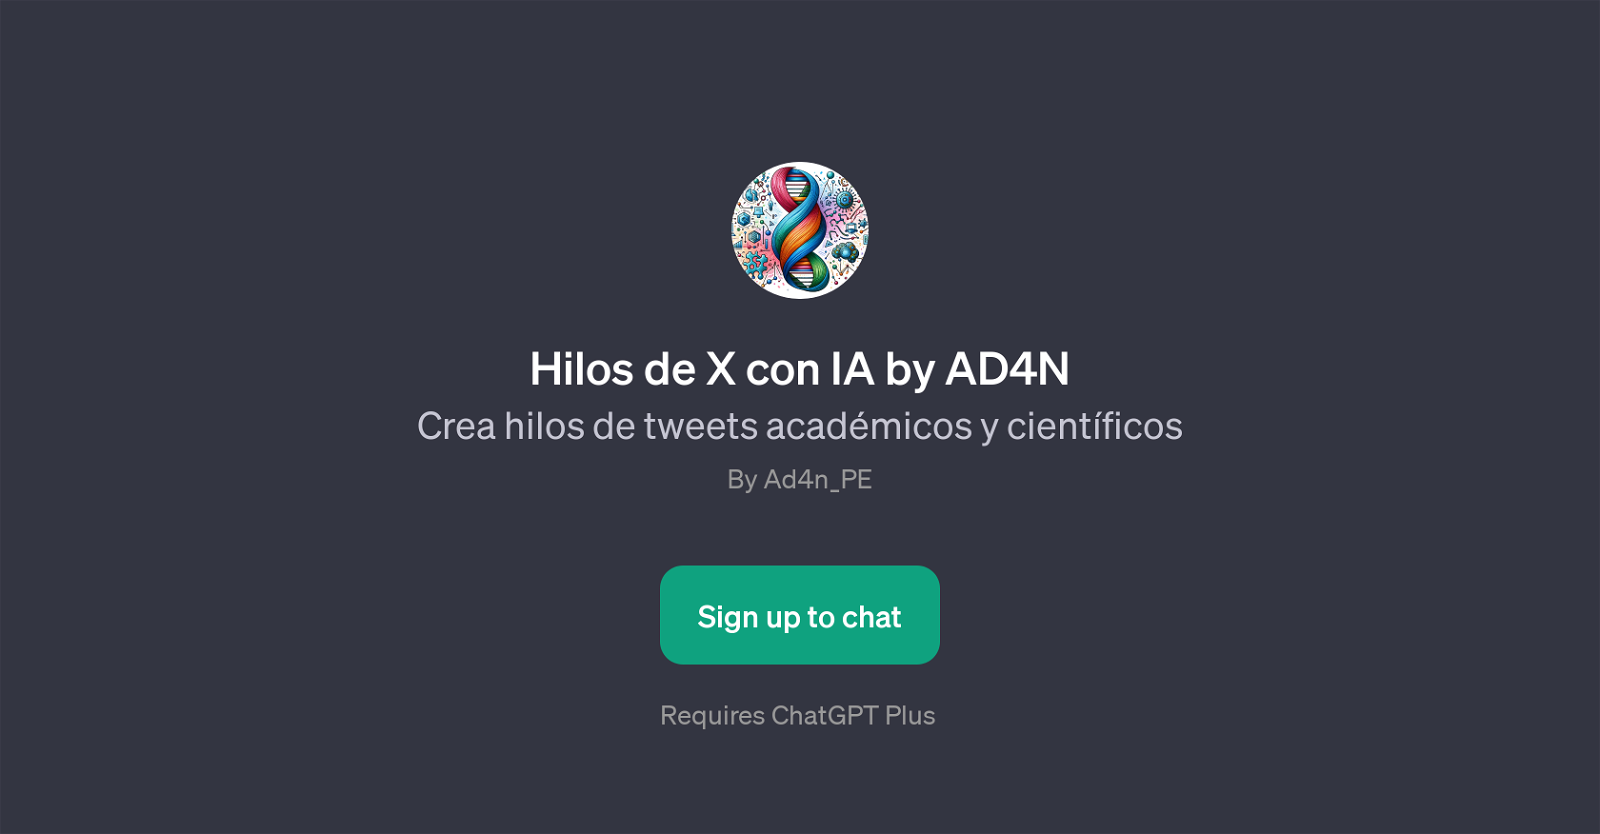 Hilos de X con IA by AD4N website